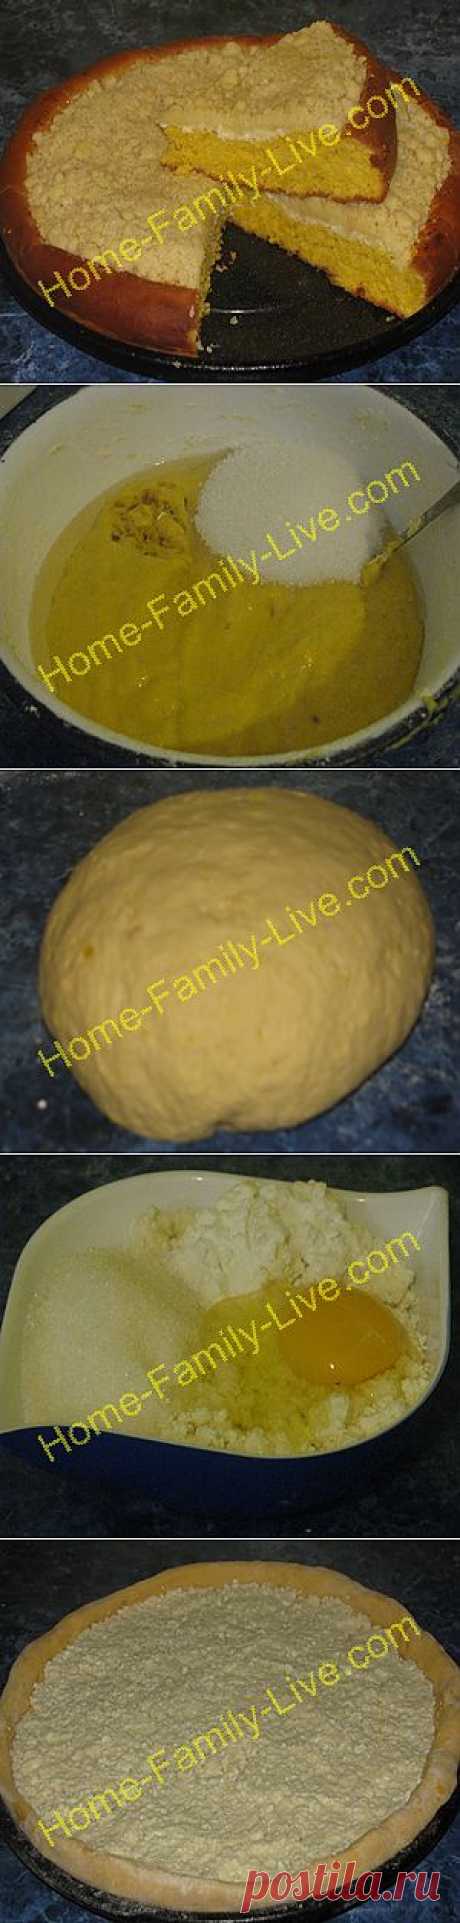 Кулинарные рецепты Пирог ватрушка -пошаговый фоторецепт - пирог из тыквенного теста